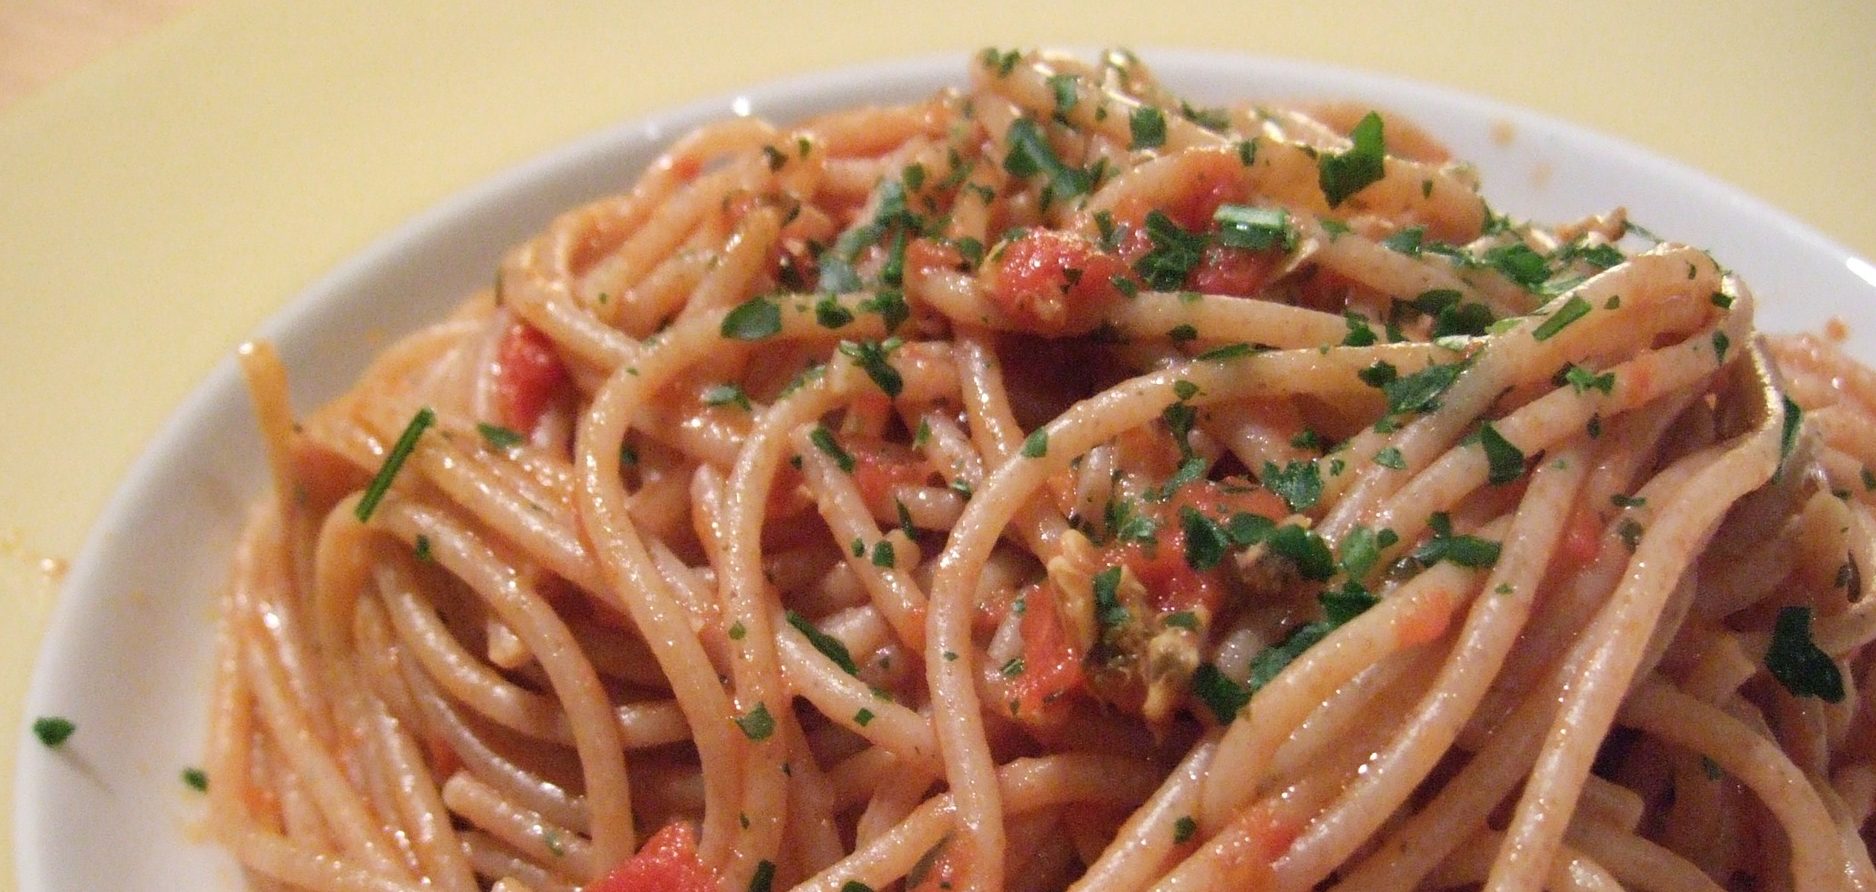 Spaghetti con alici fresche al pomodoro alla calabrese